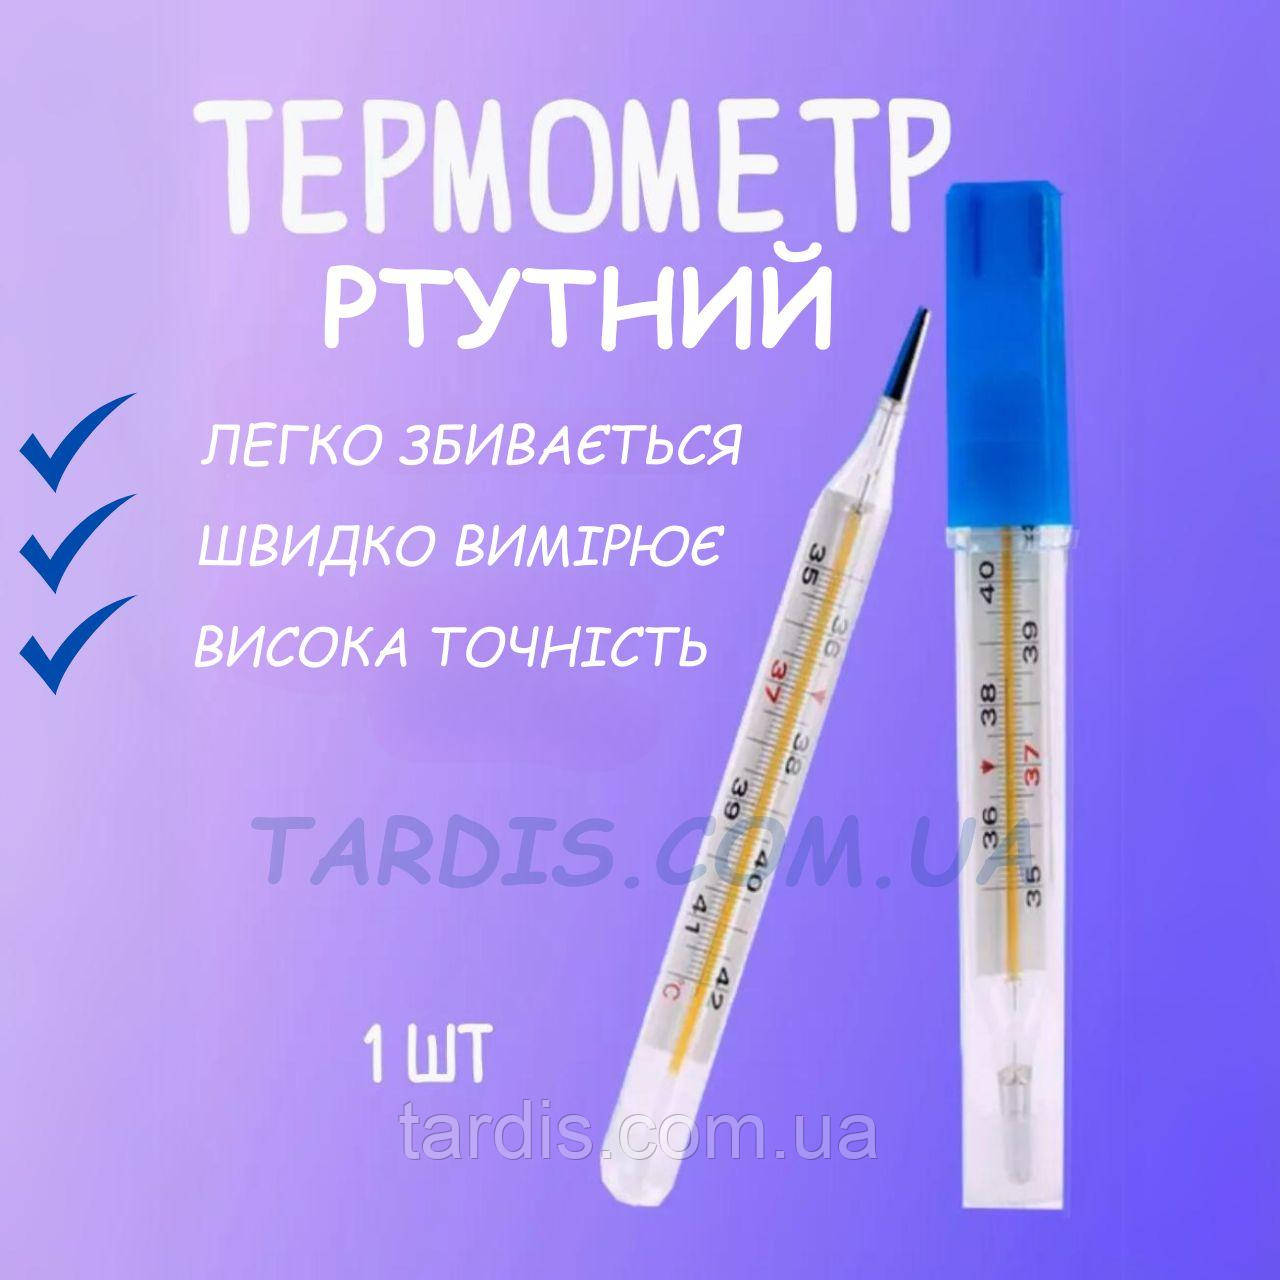 Термометр ртутний  ОРИГІНАЛ, гарантія